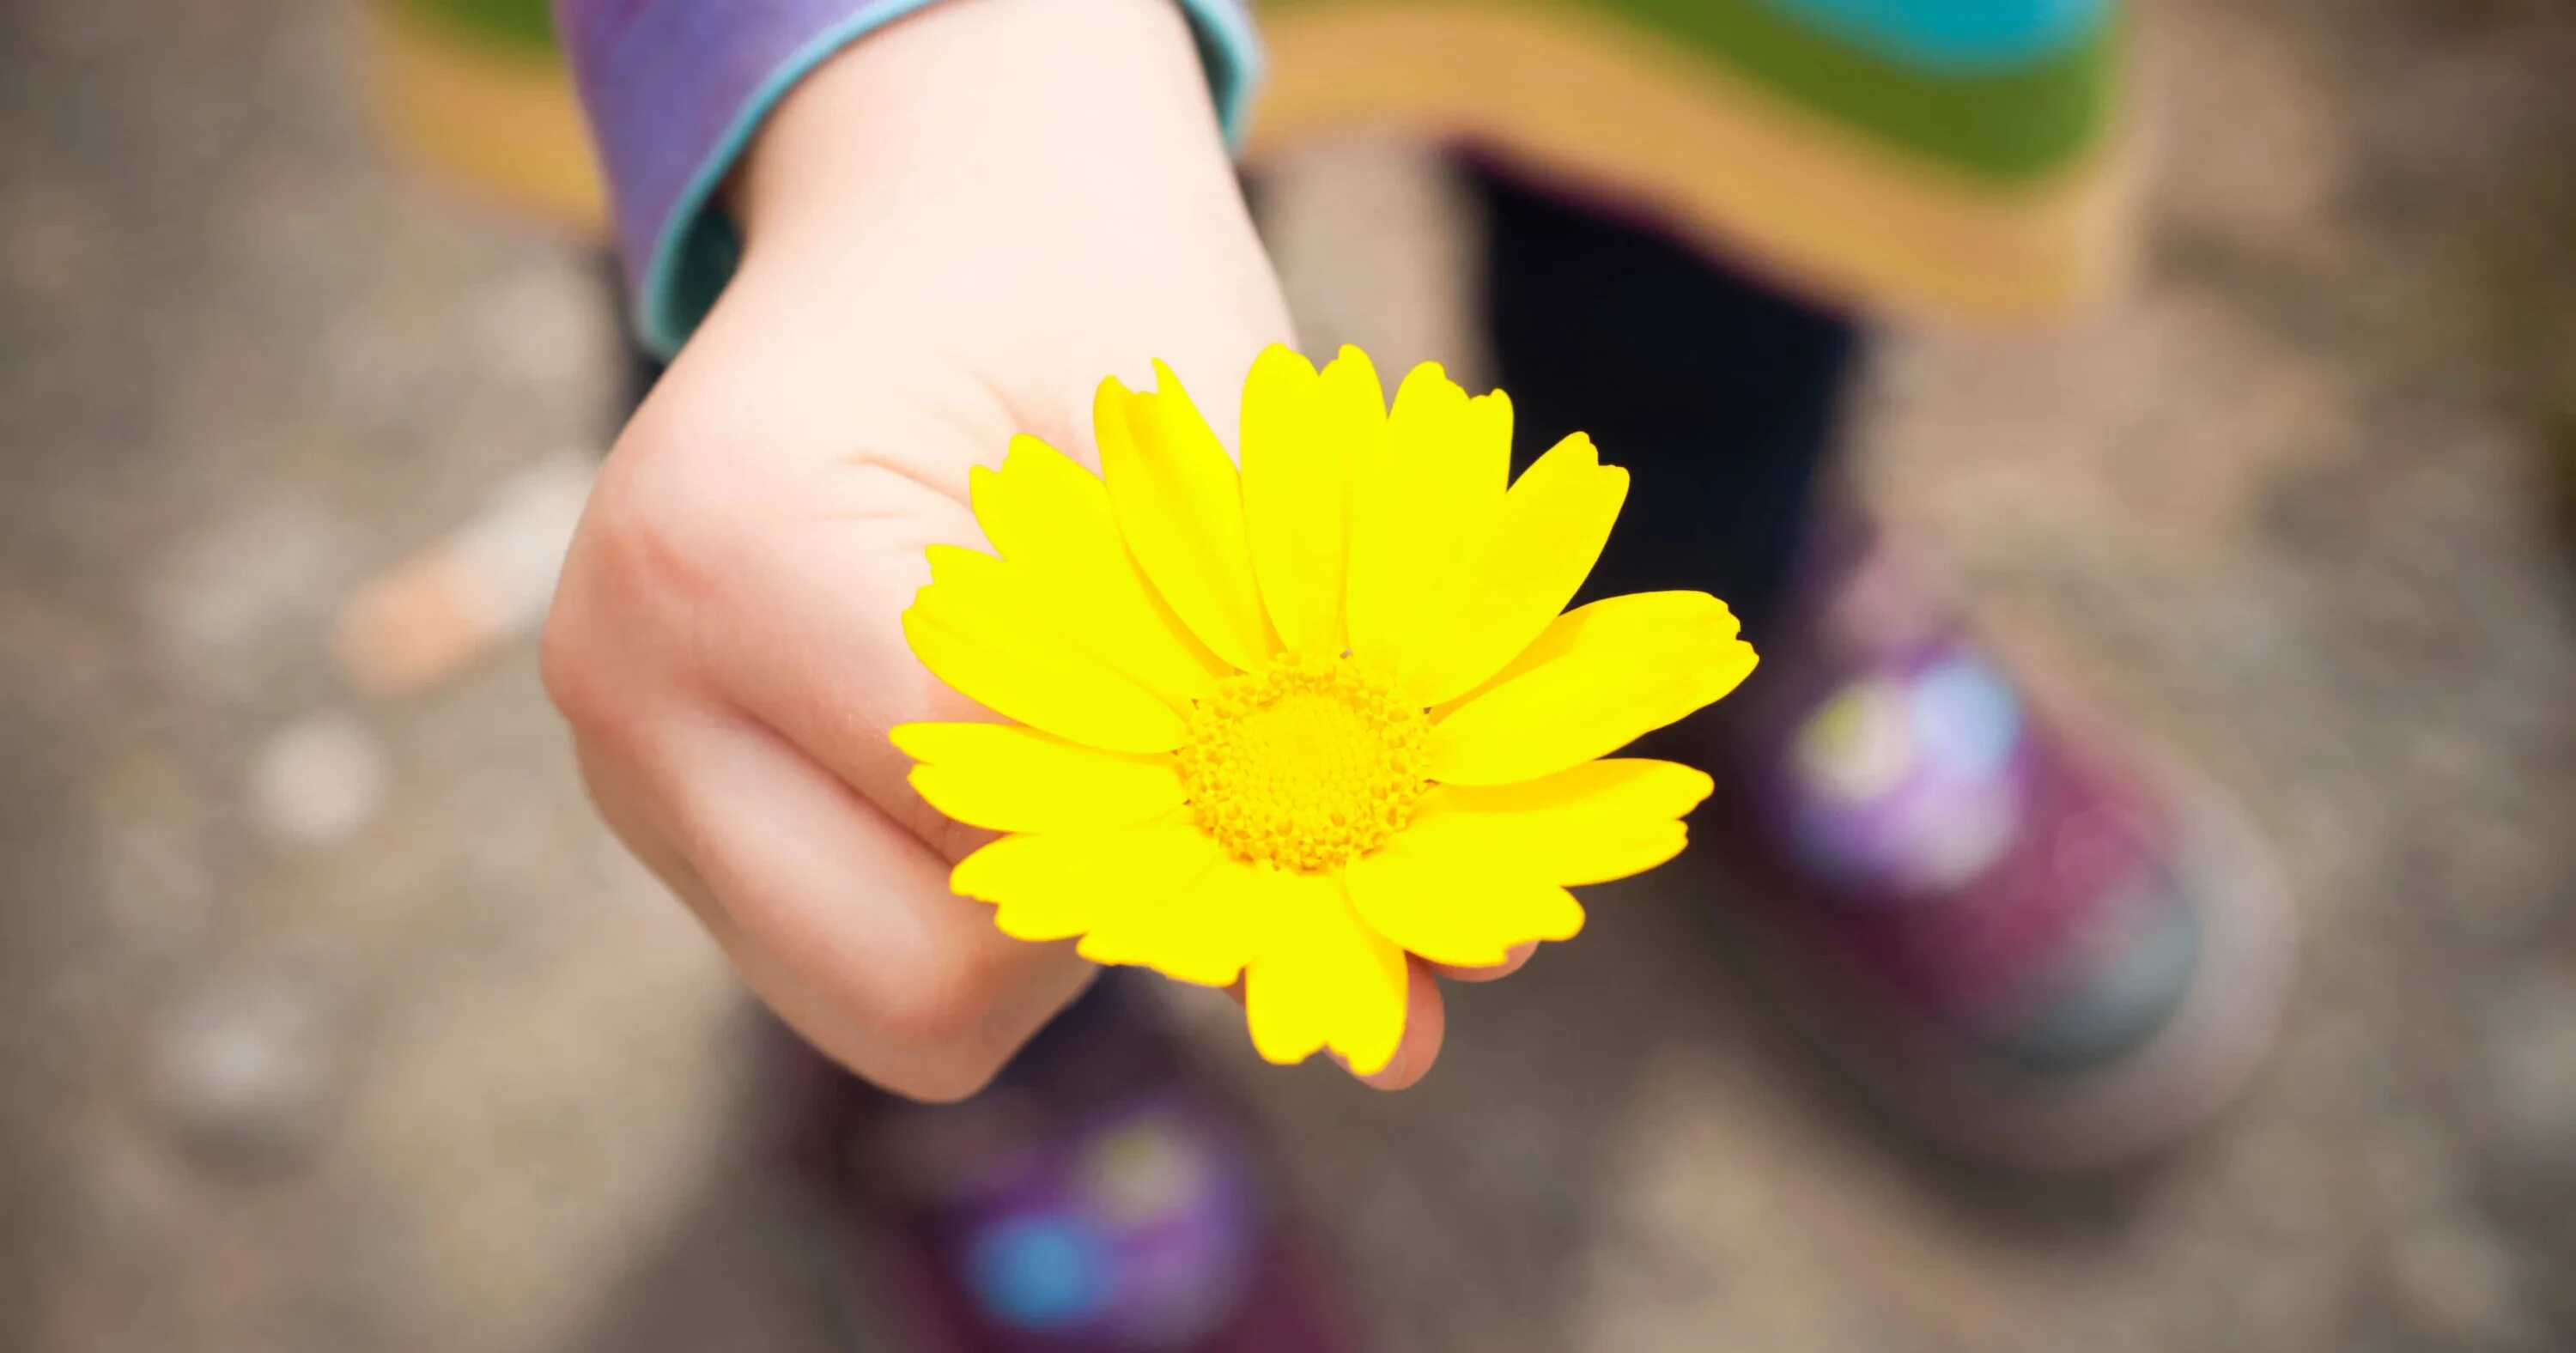 Малыш протянул руки навстречу маме впр. Протягивает цветочек. Ребёнок протягивает цветочек. Цветок на руку.. Руки детские протягивают цветы.